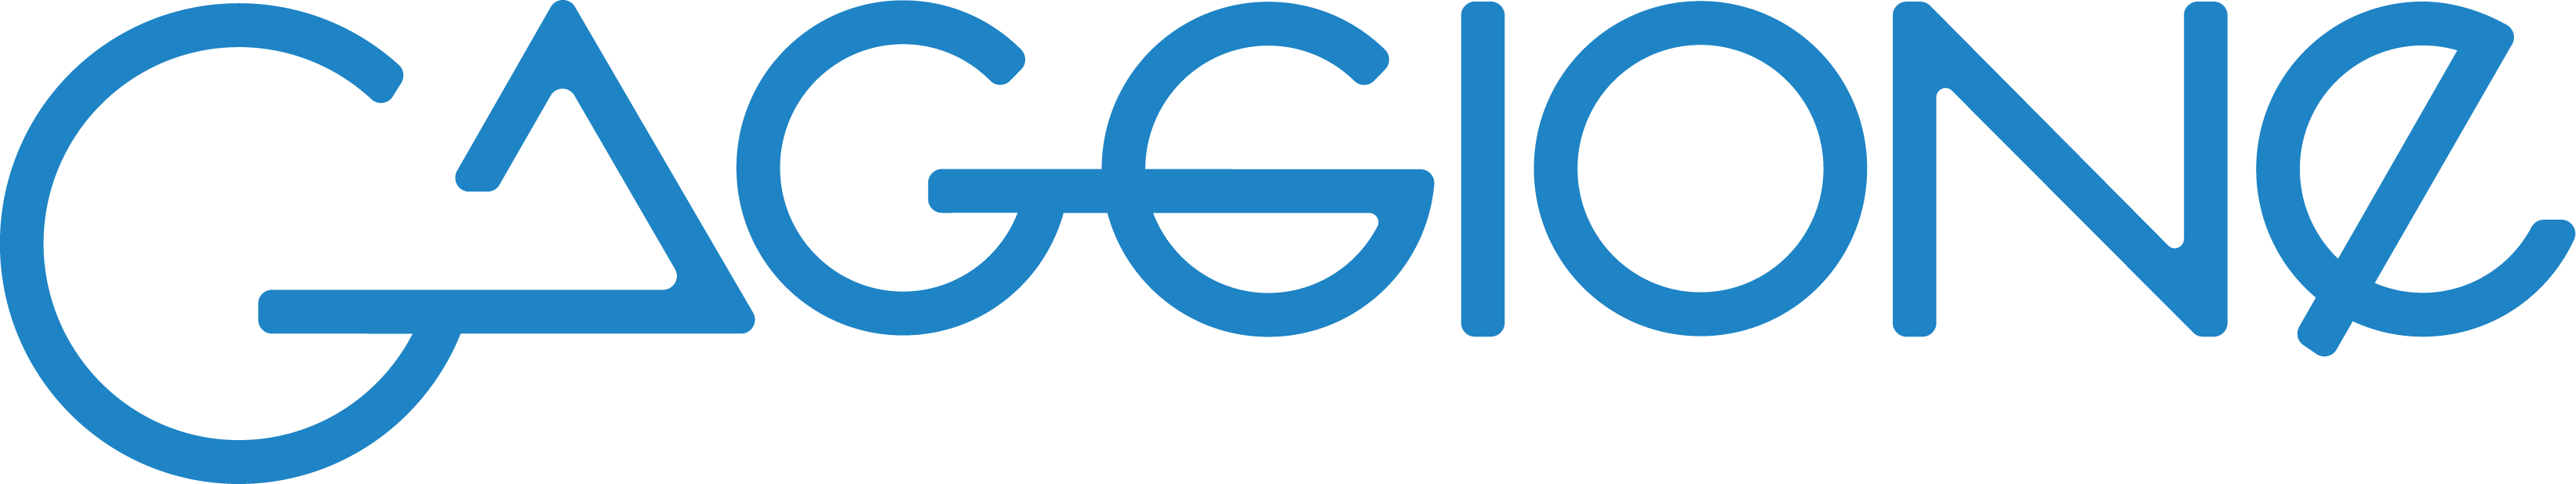 Gaggione logo